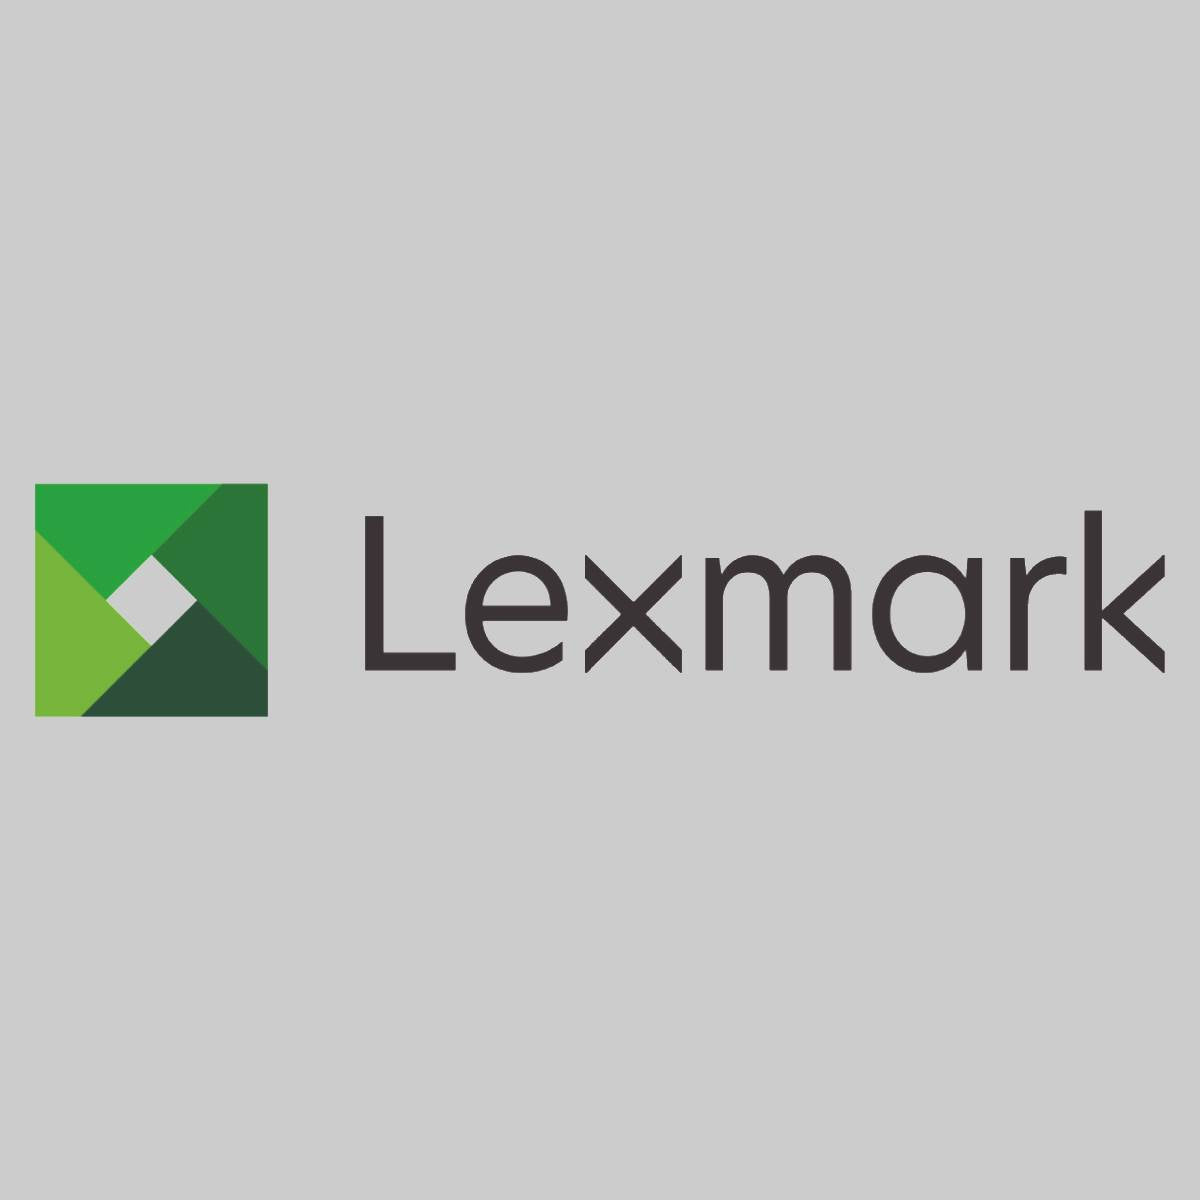 "Toner original Lexmark noir 64G0H00 pour MX 910 MX 911 MX 912 NOUVEAU OVP